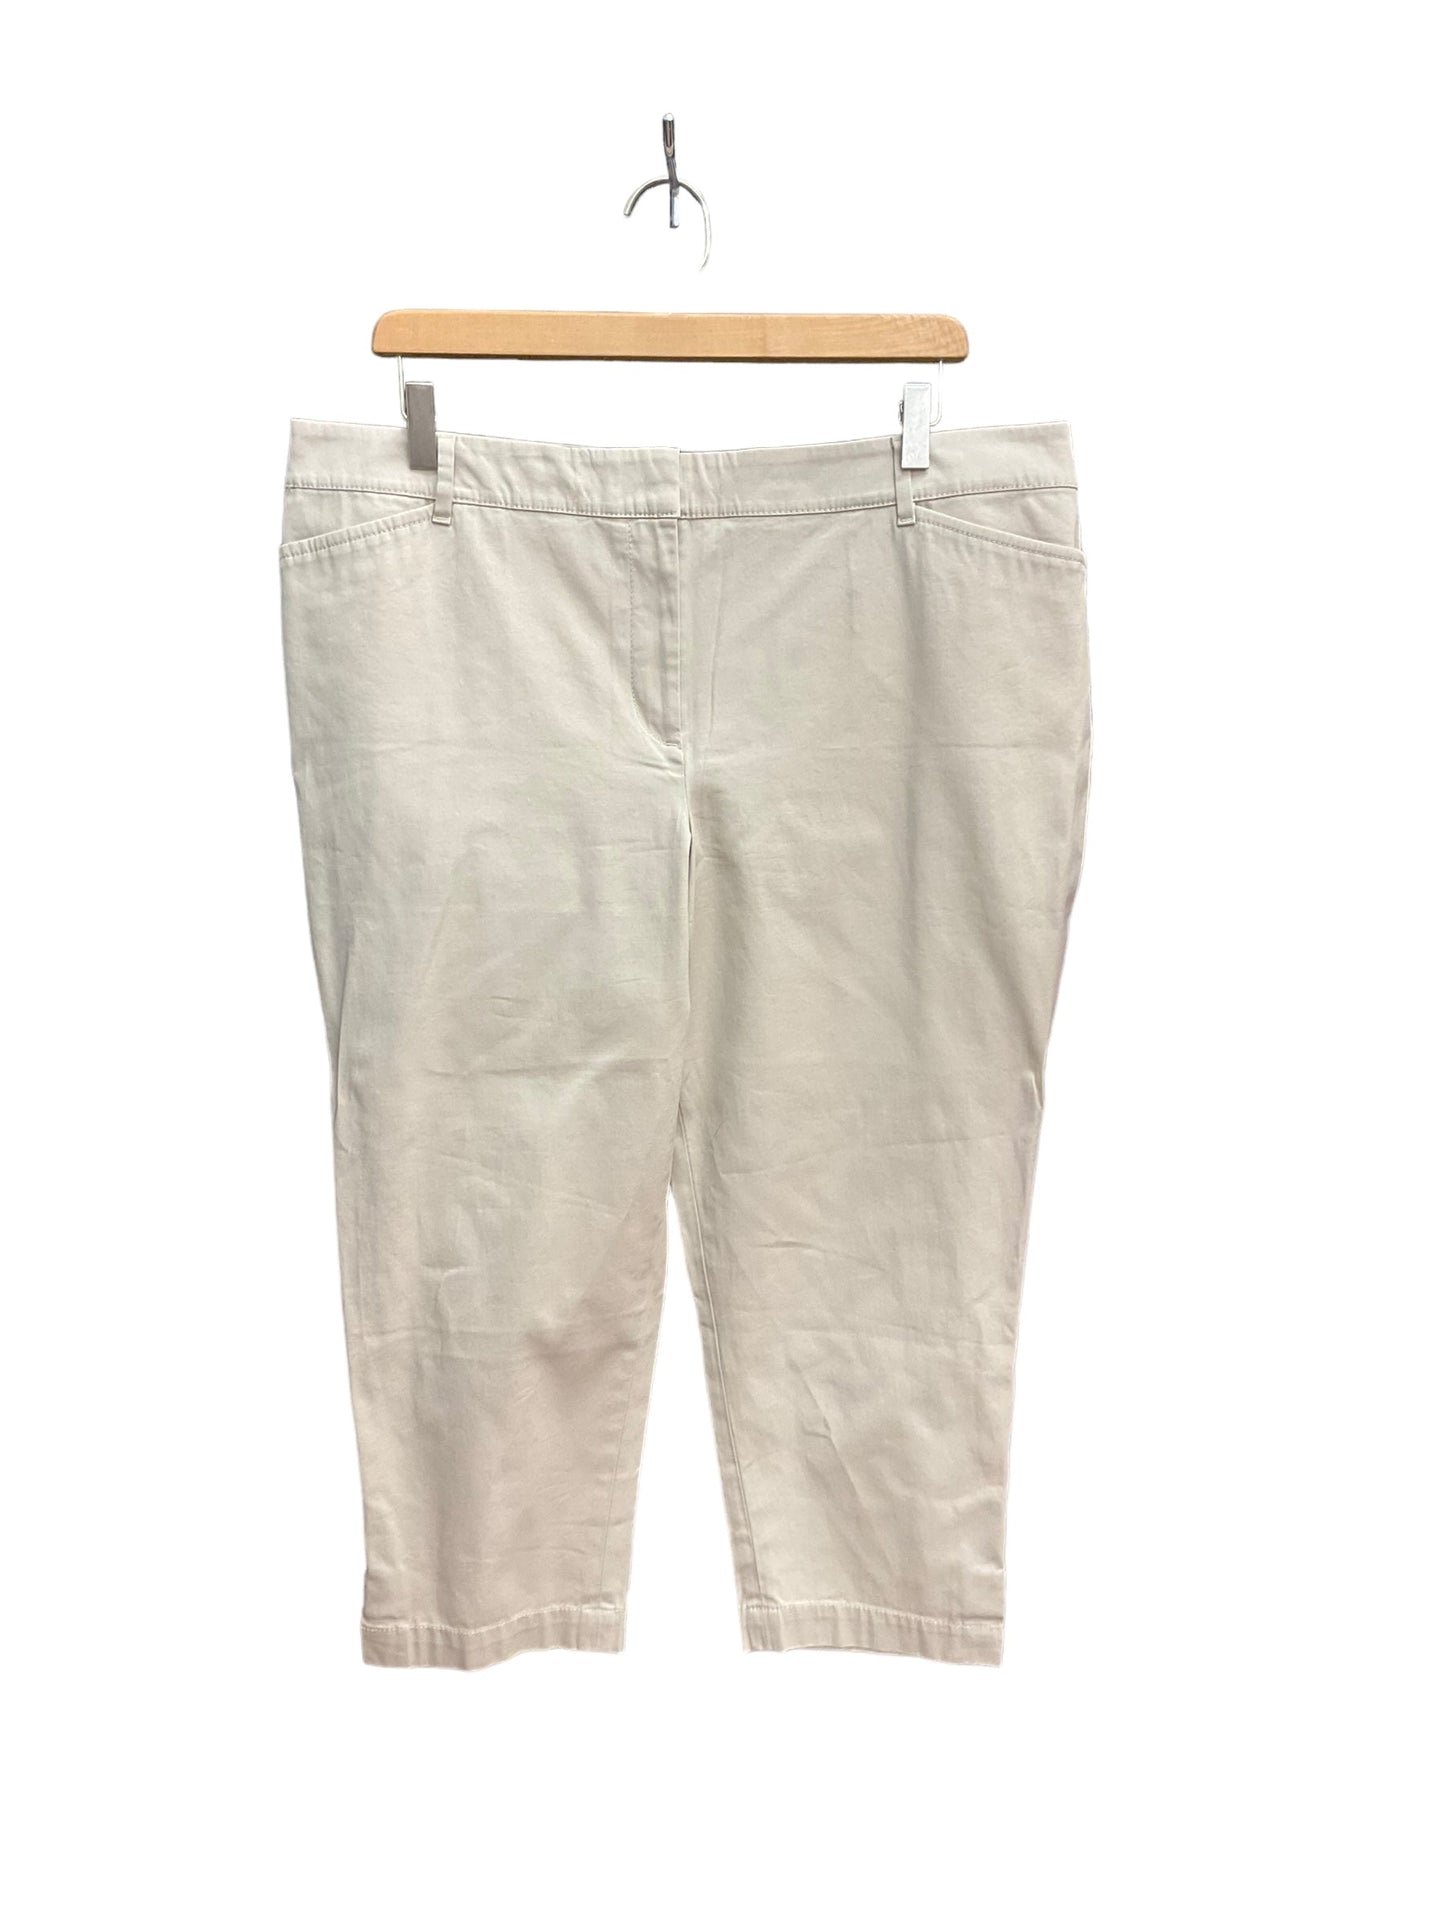 Tan Pants Cropped Talbots, Size 16